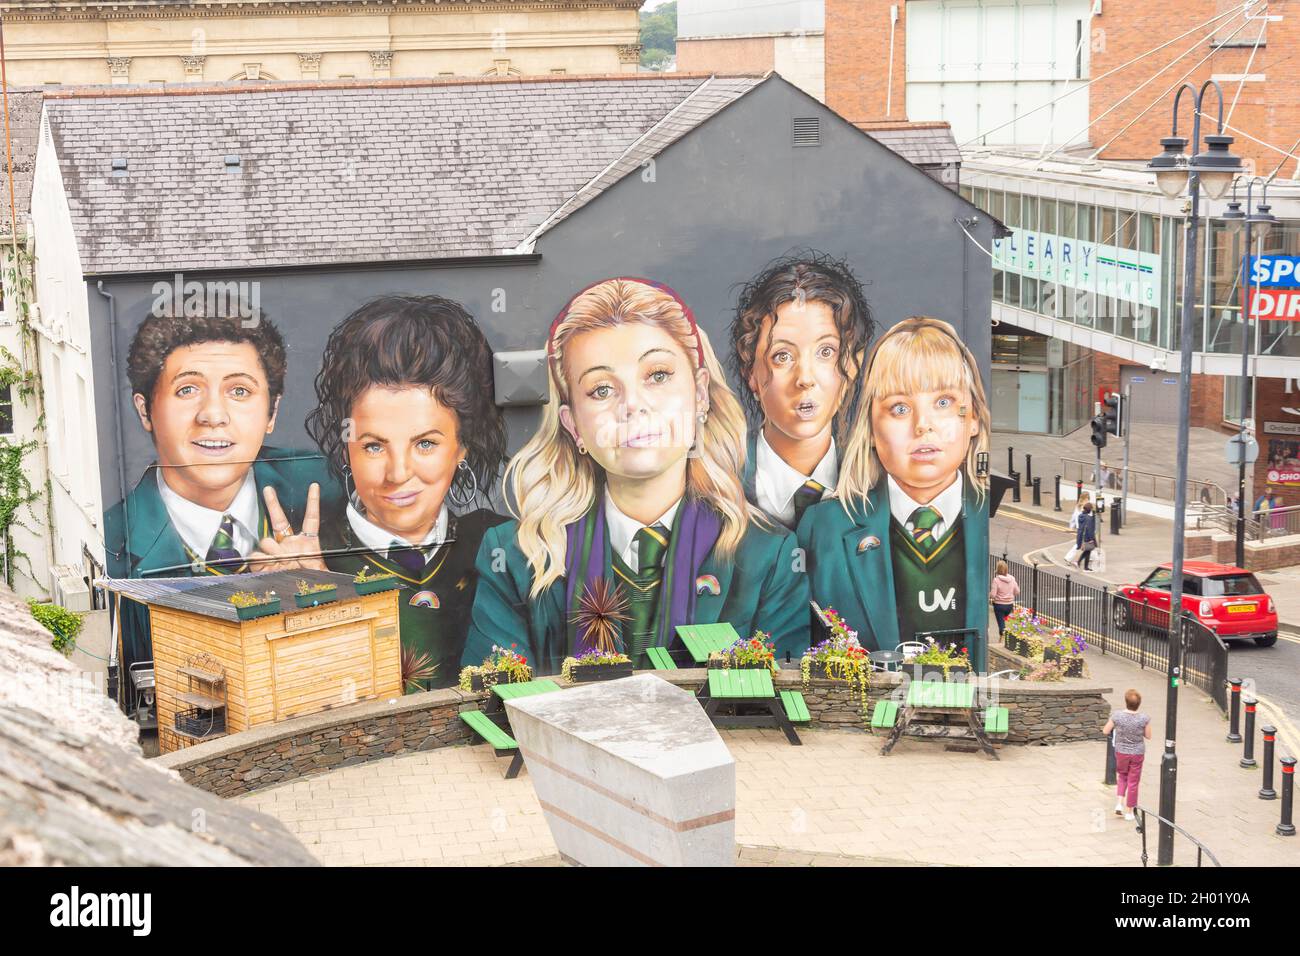 Derry Girls (TV-Komödie) Wandgemälde, Orchard Street, Derry (Londonderry), County Derry, Nordirland, Vereinigtes Königreich Stockfoto